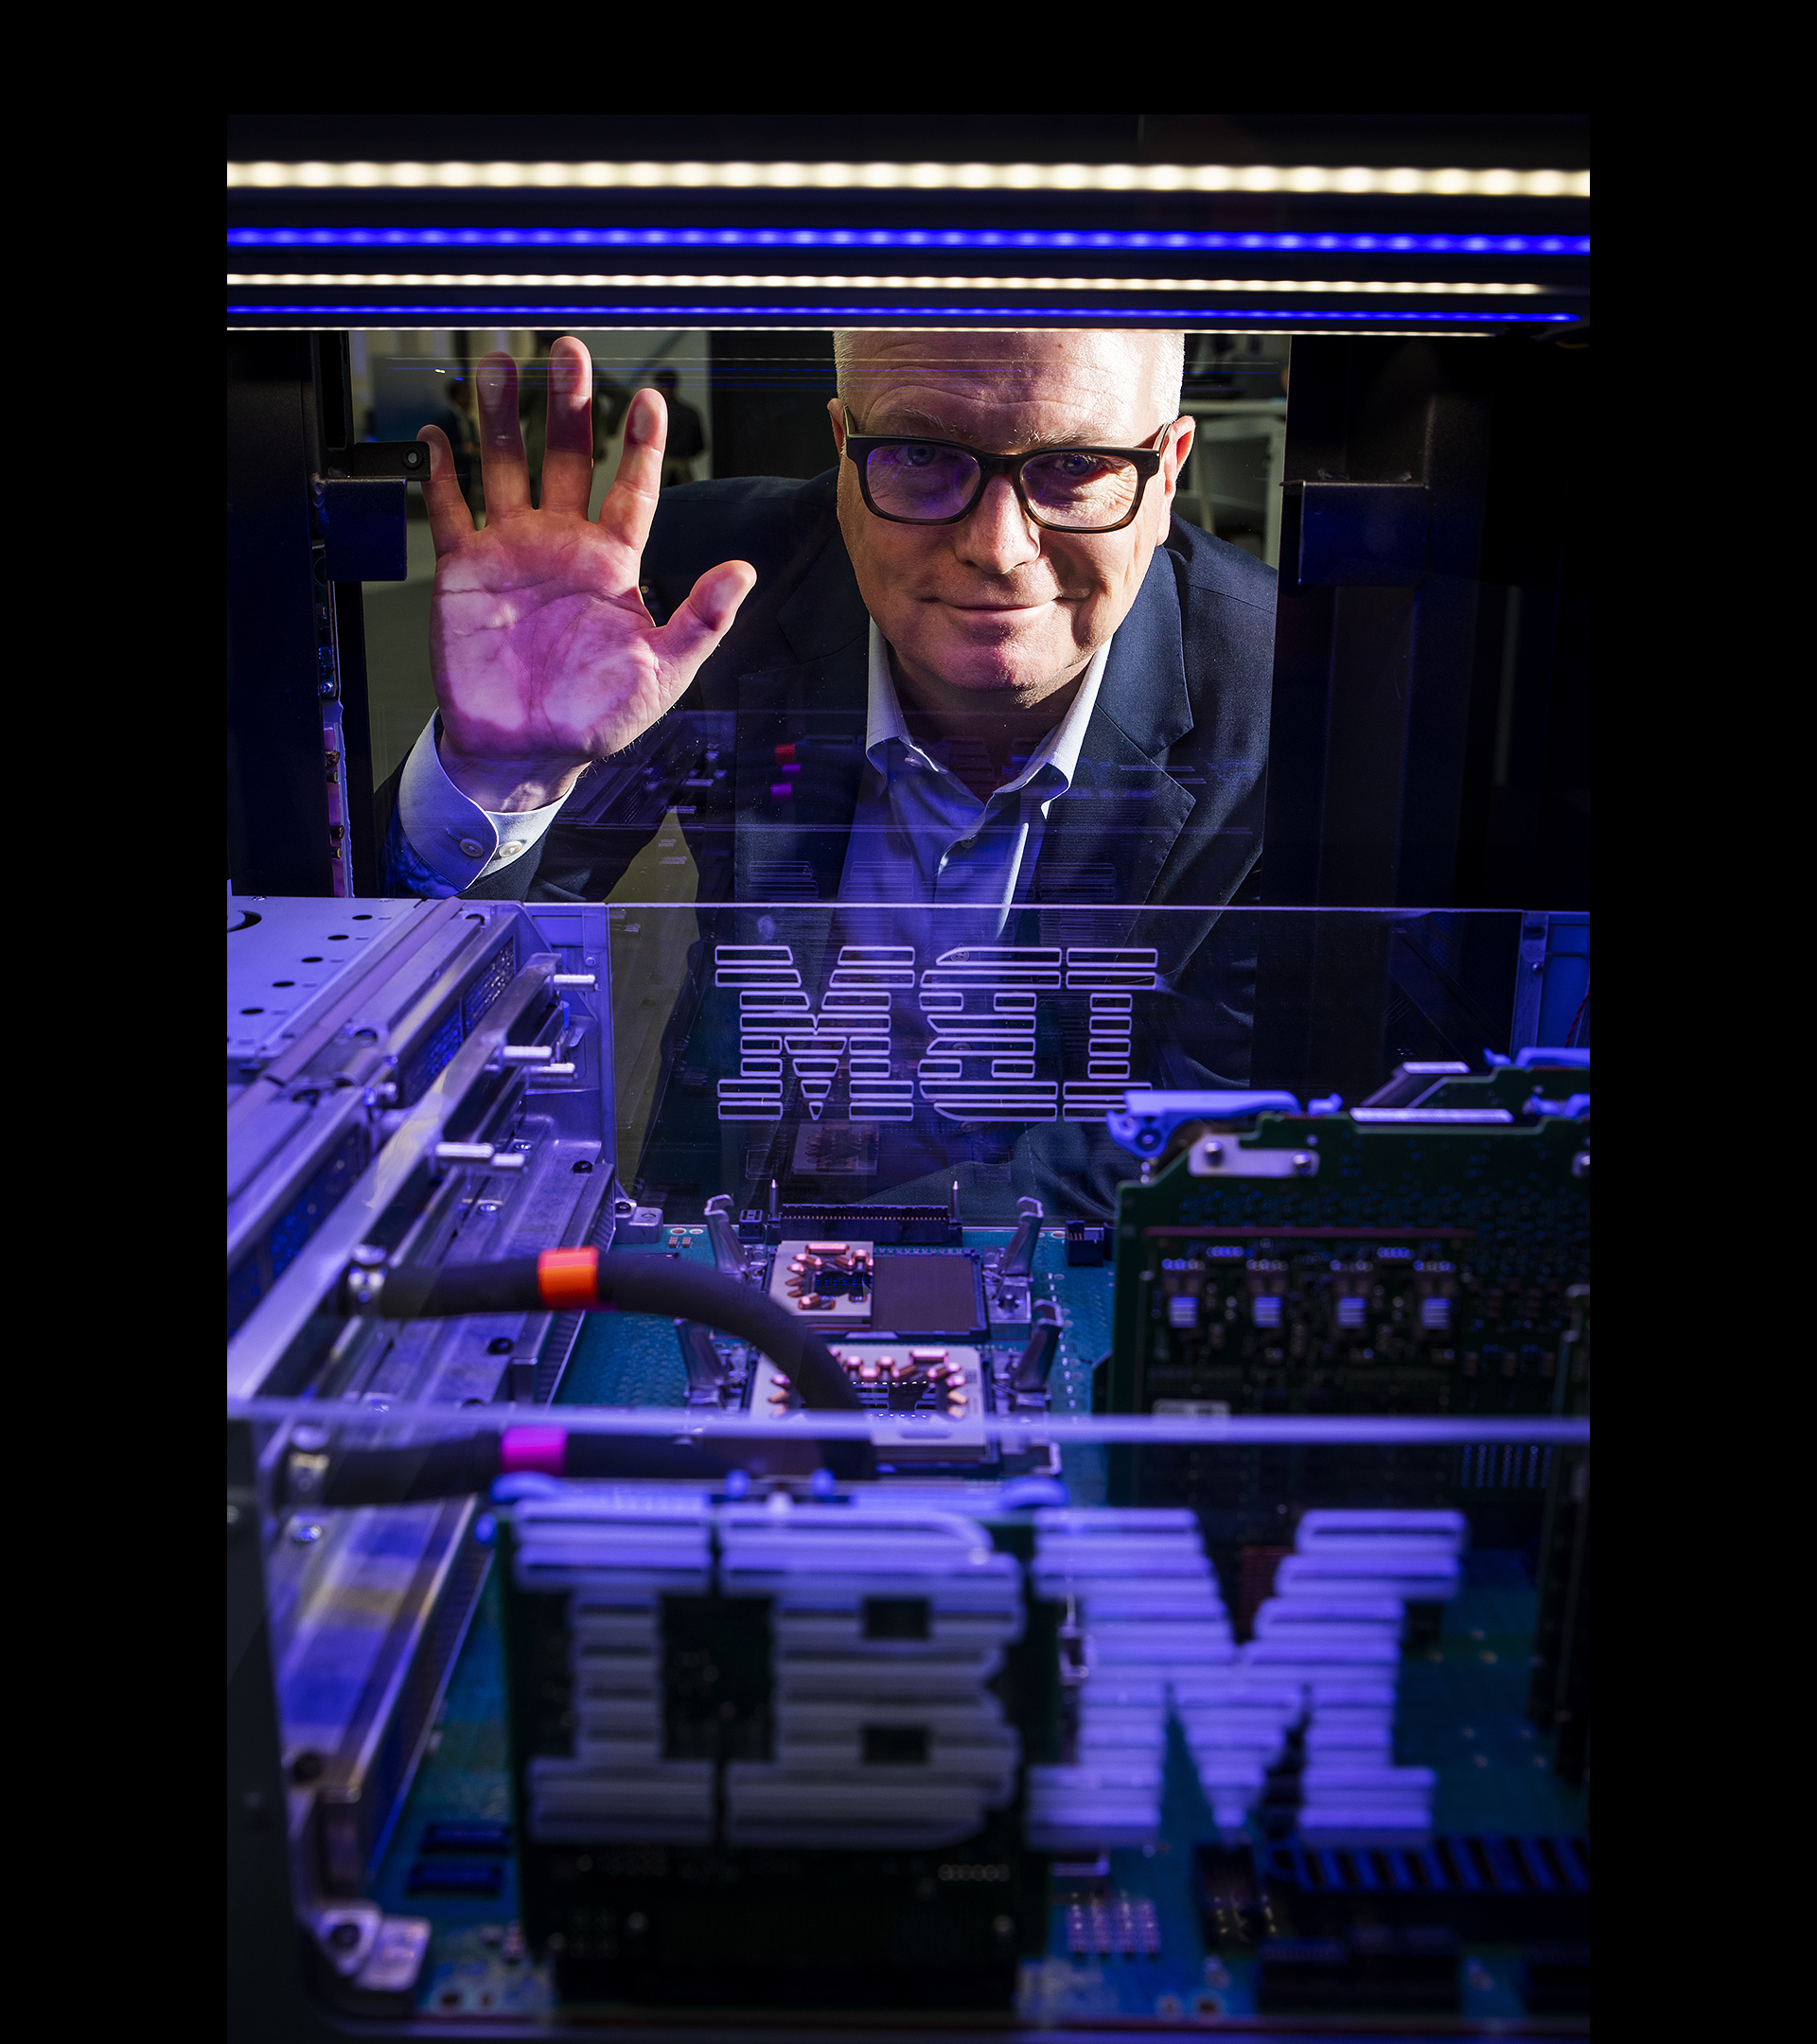 "IBM es el adulto de la sala. La moda va y viene, lo nuestro es el estilo"